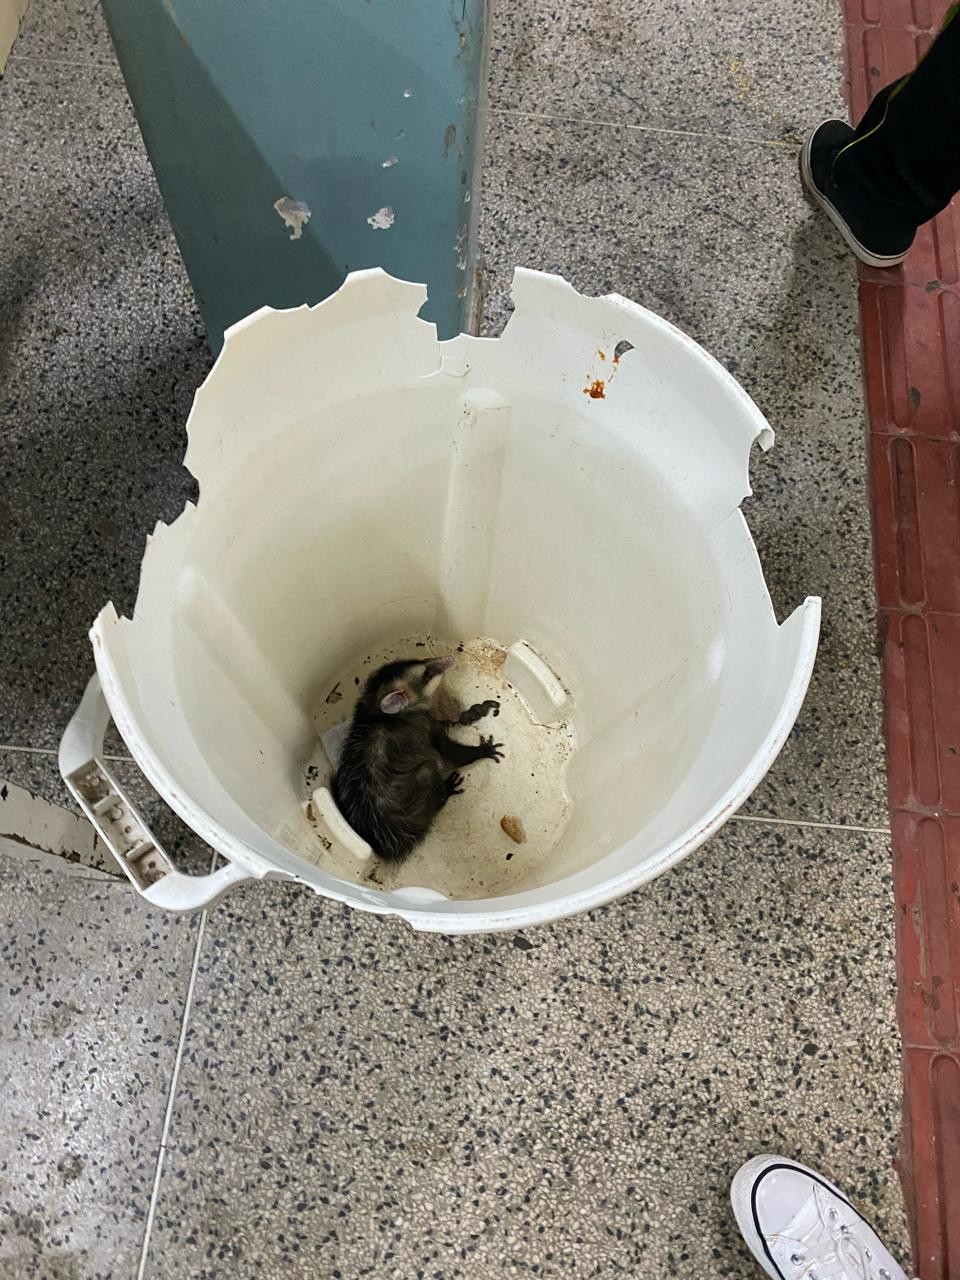 O gambá morto foi encontrado no lixo da cantina do colégio; o registro foi feito por estudantes